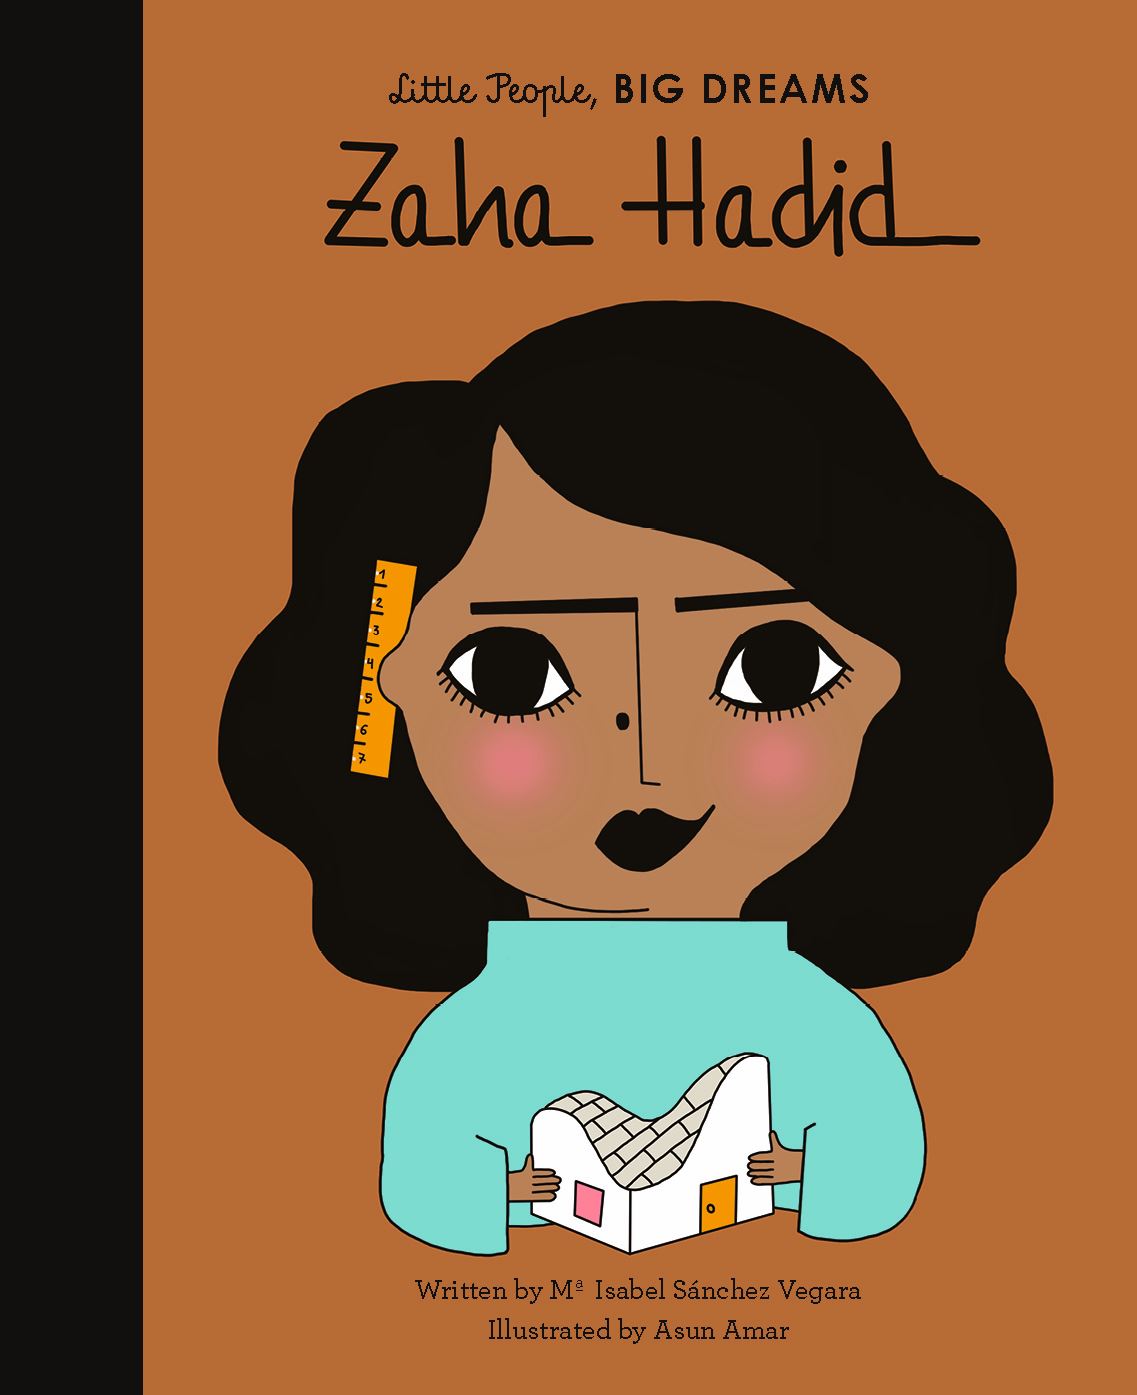 Little People Big Dreams: Zaha Hadid | NSPCC Shop